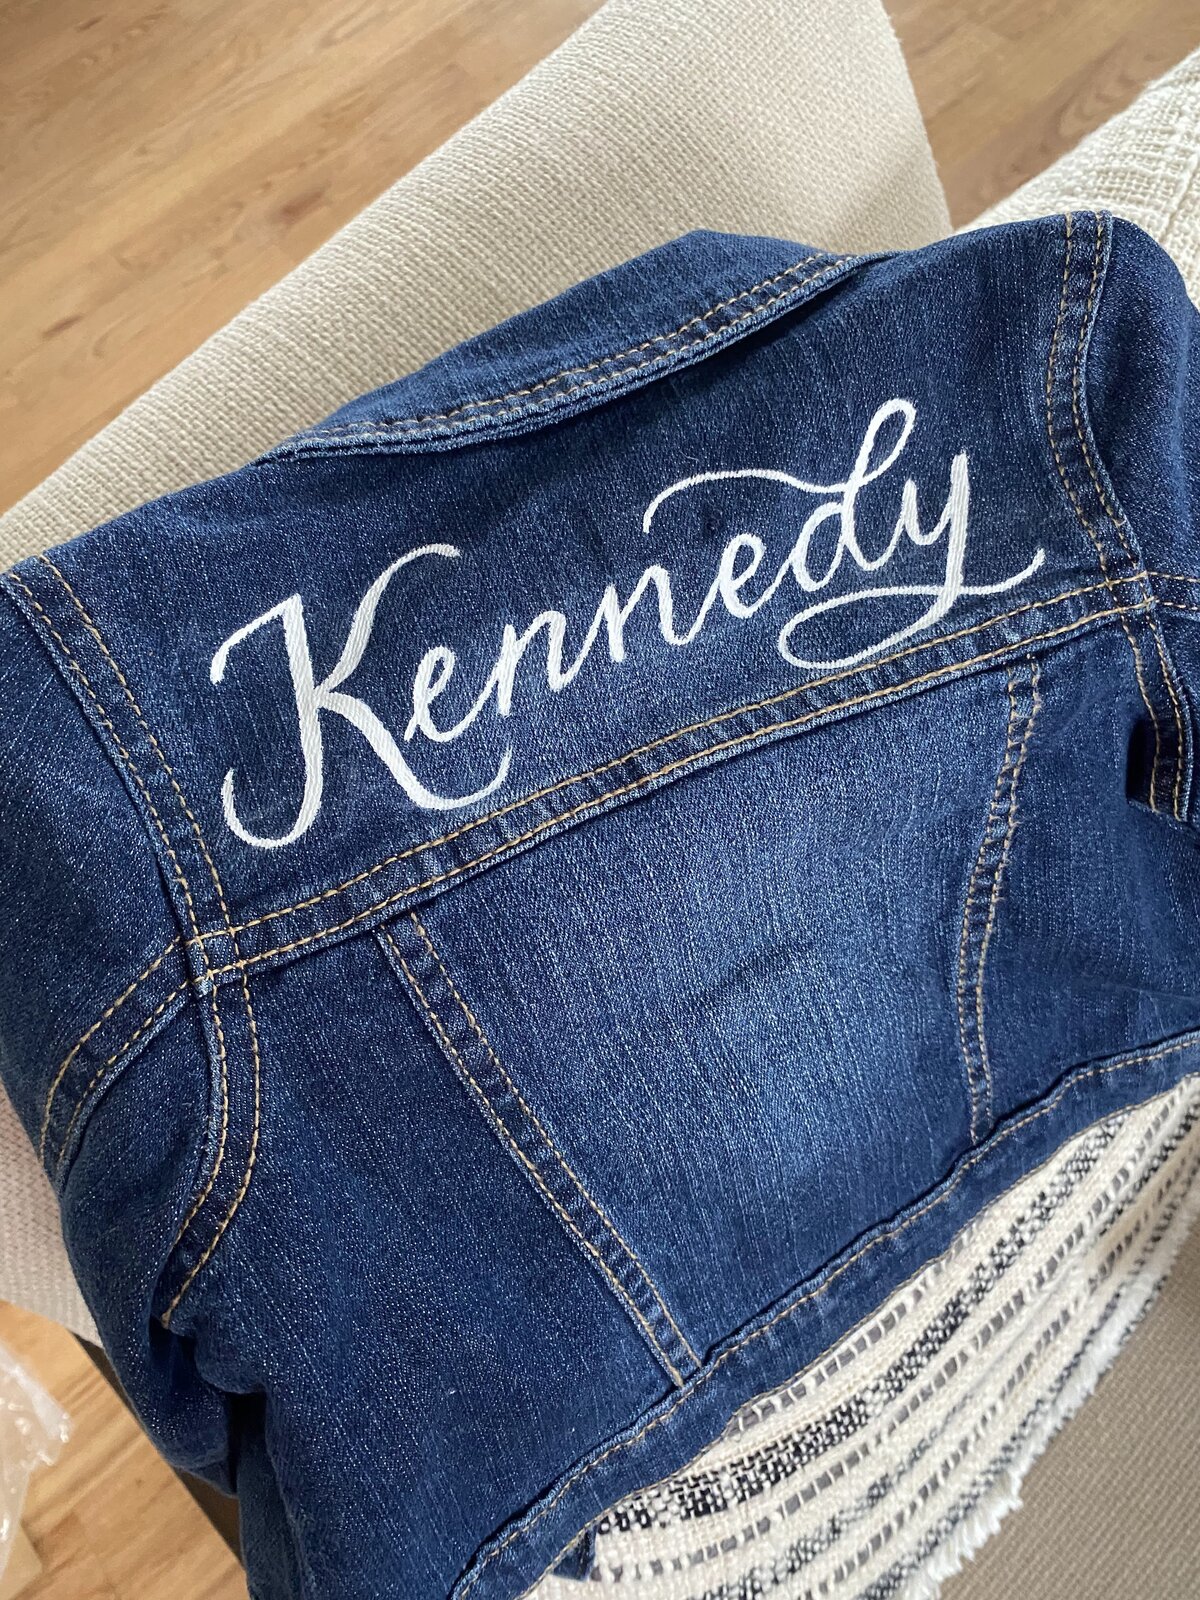 custom denim jean jacket lettered